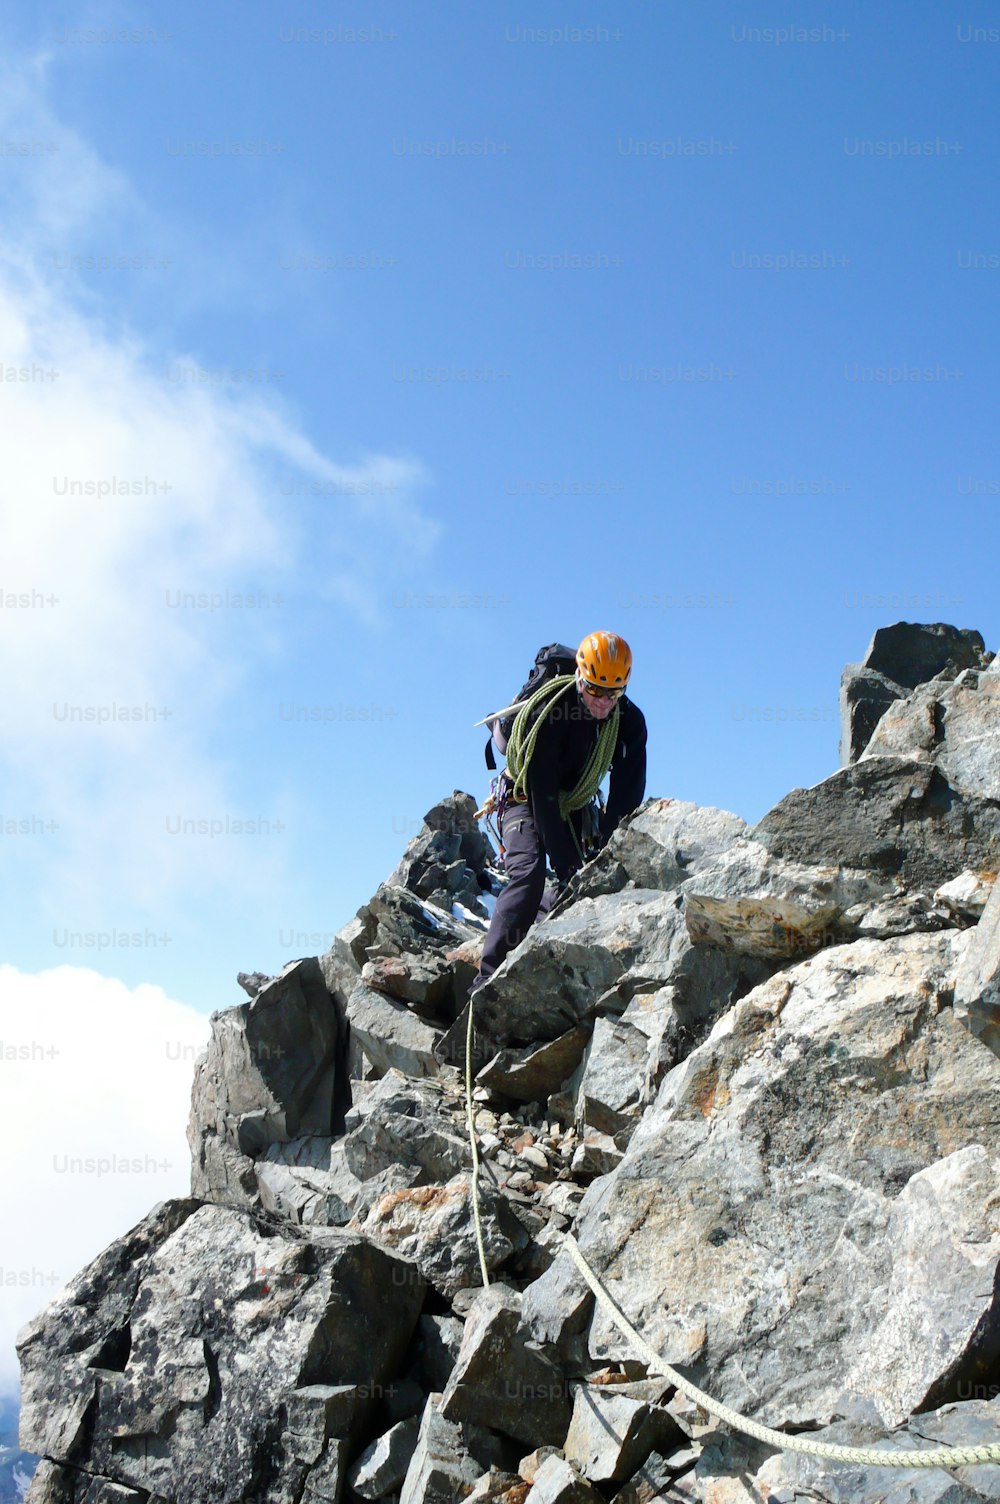 guide de montagne sur une crête rocheuse escarpée et exposée en route vers un sommet alpin avec un client lors d’une belle journée dans les Alpes suisses